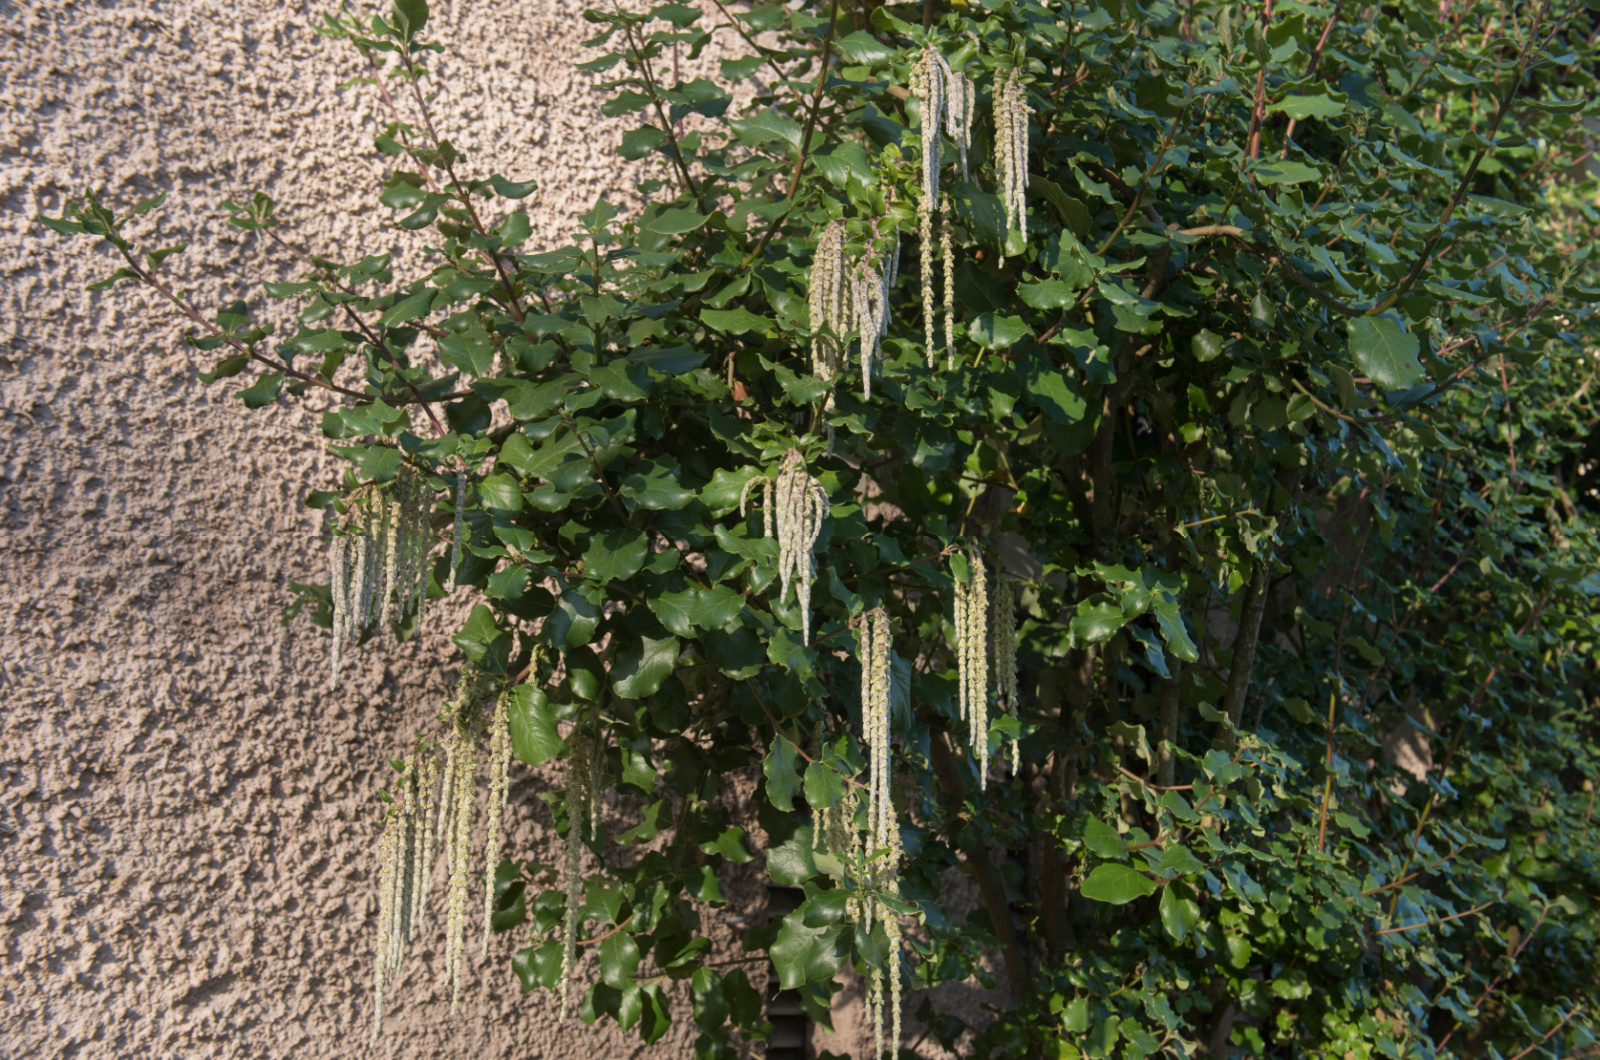 Silk Tassel Bush in garden